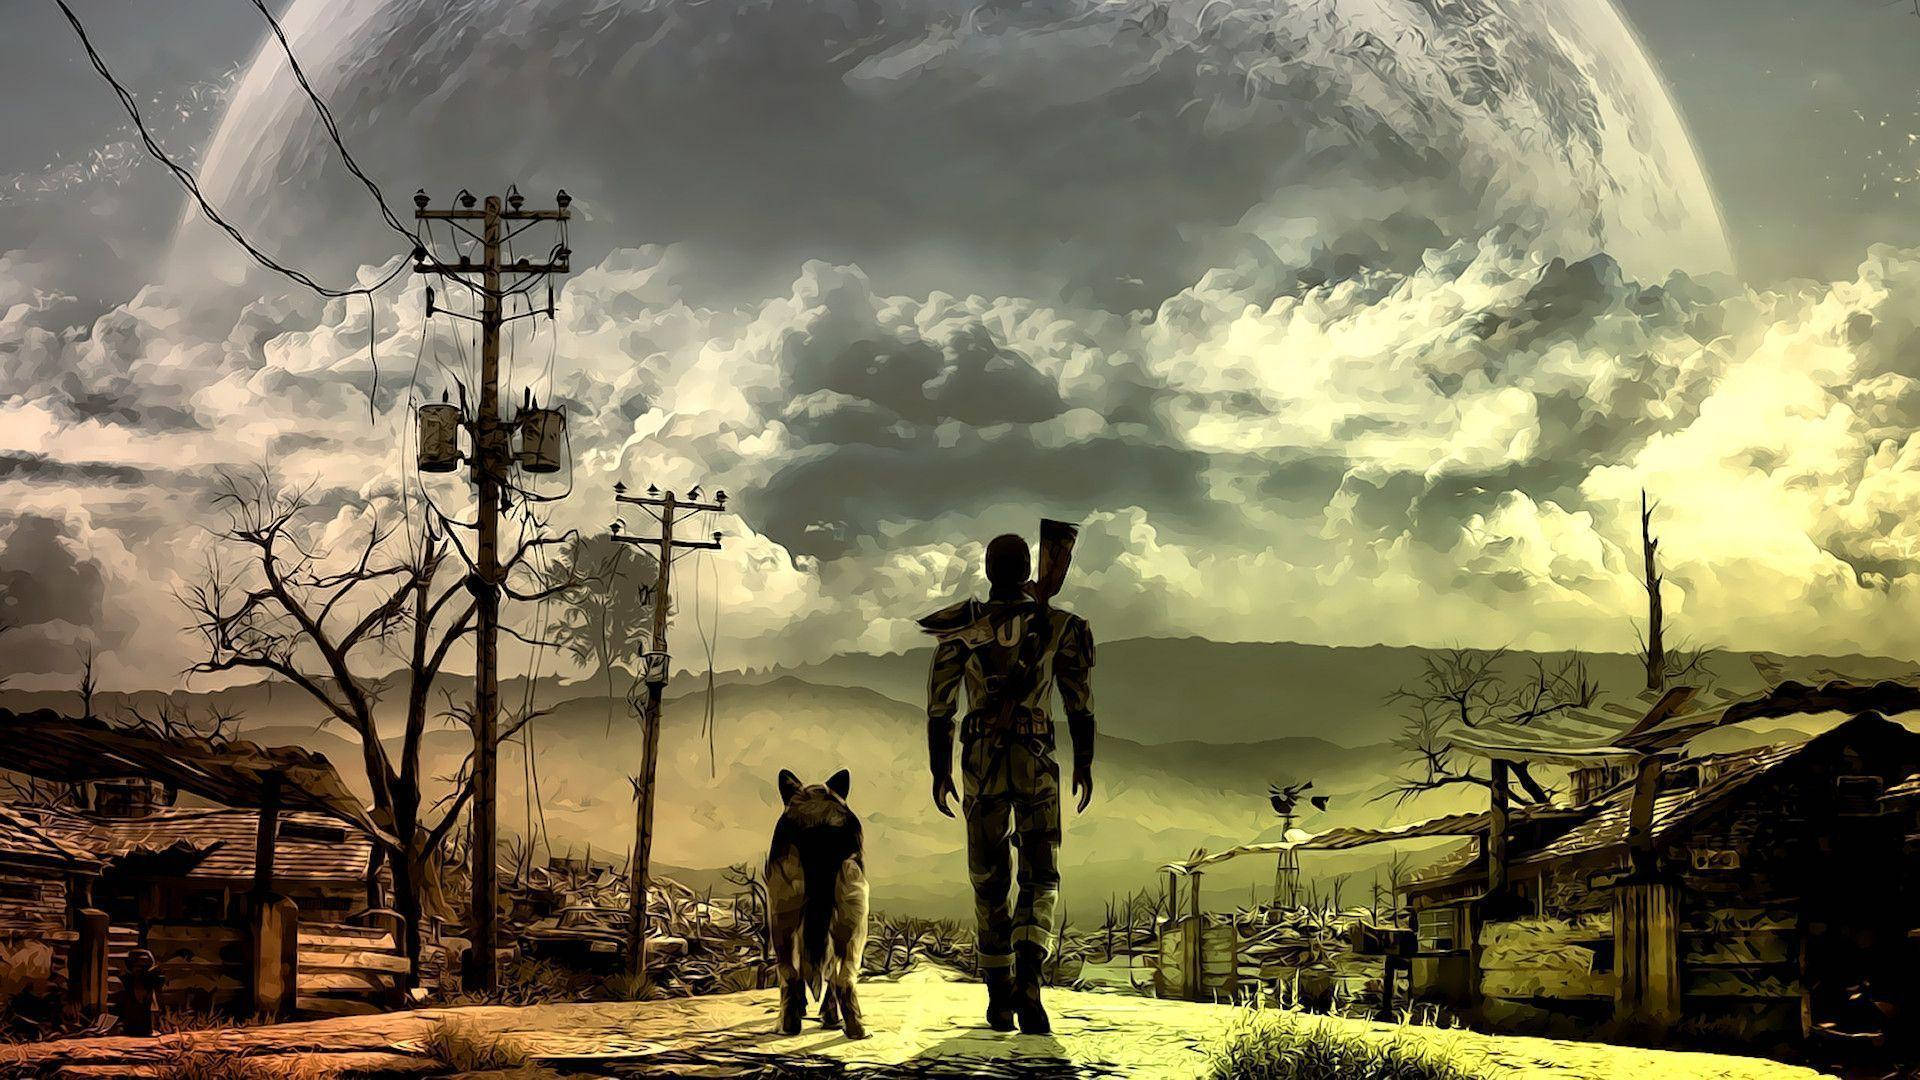 Hình nền Fallout miễn phí: Với những người yêu thích thể loại game hậu tận thế, hình ảnh nền Fallout cung cấp cho bạn những hình ảnh tuyệt đẹp, đầy màu sắc và kịch tính của trò chơi. Hãy tải ngay những hình ảnh này để cập nhật cho máy tính của bạn và tận hưởng những khoảnh khắc thăng hoa cùng Fallout.